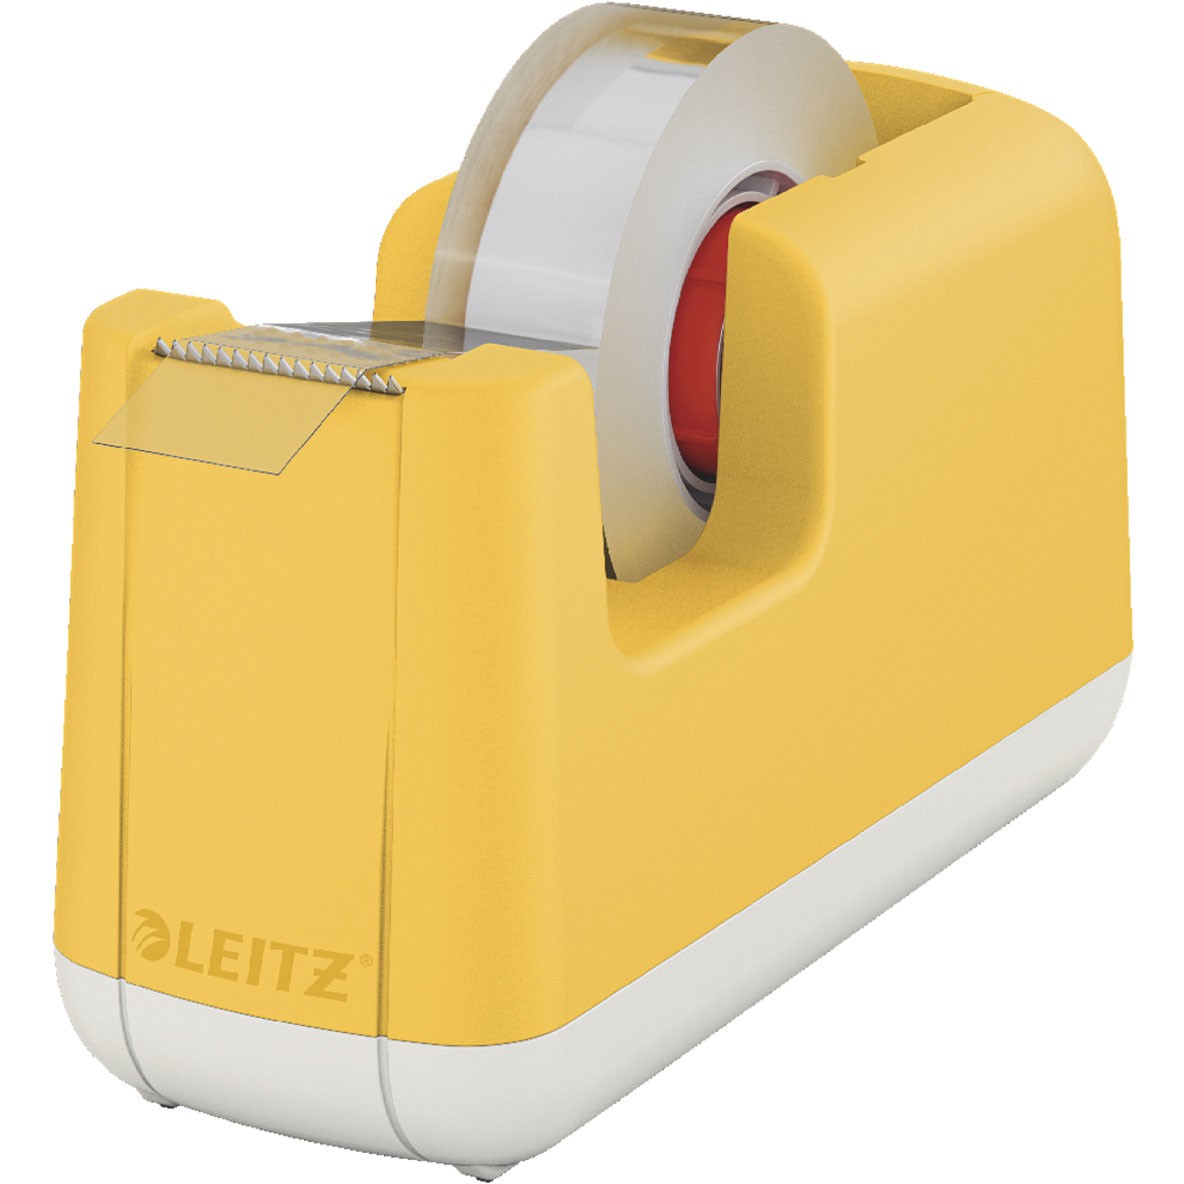 Leitz Cosy tapedispenser 33 mtr m/1 rl tape varm gul